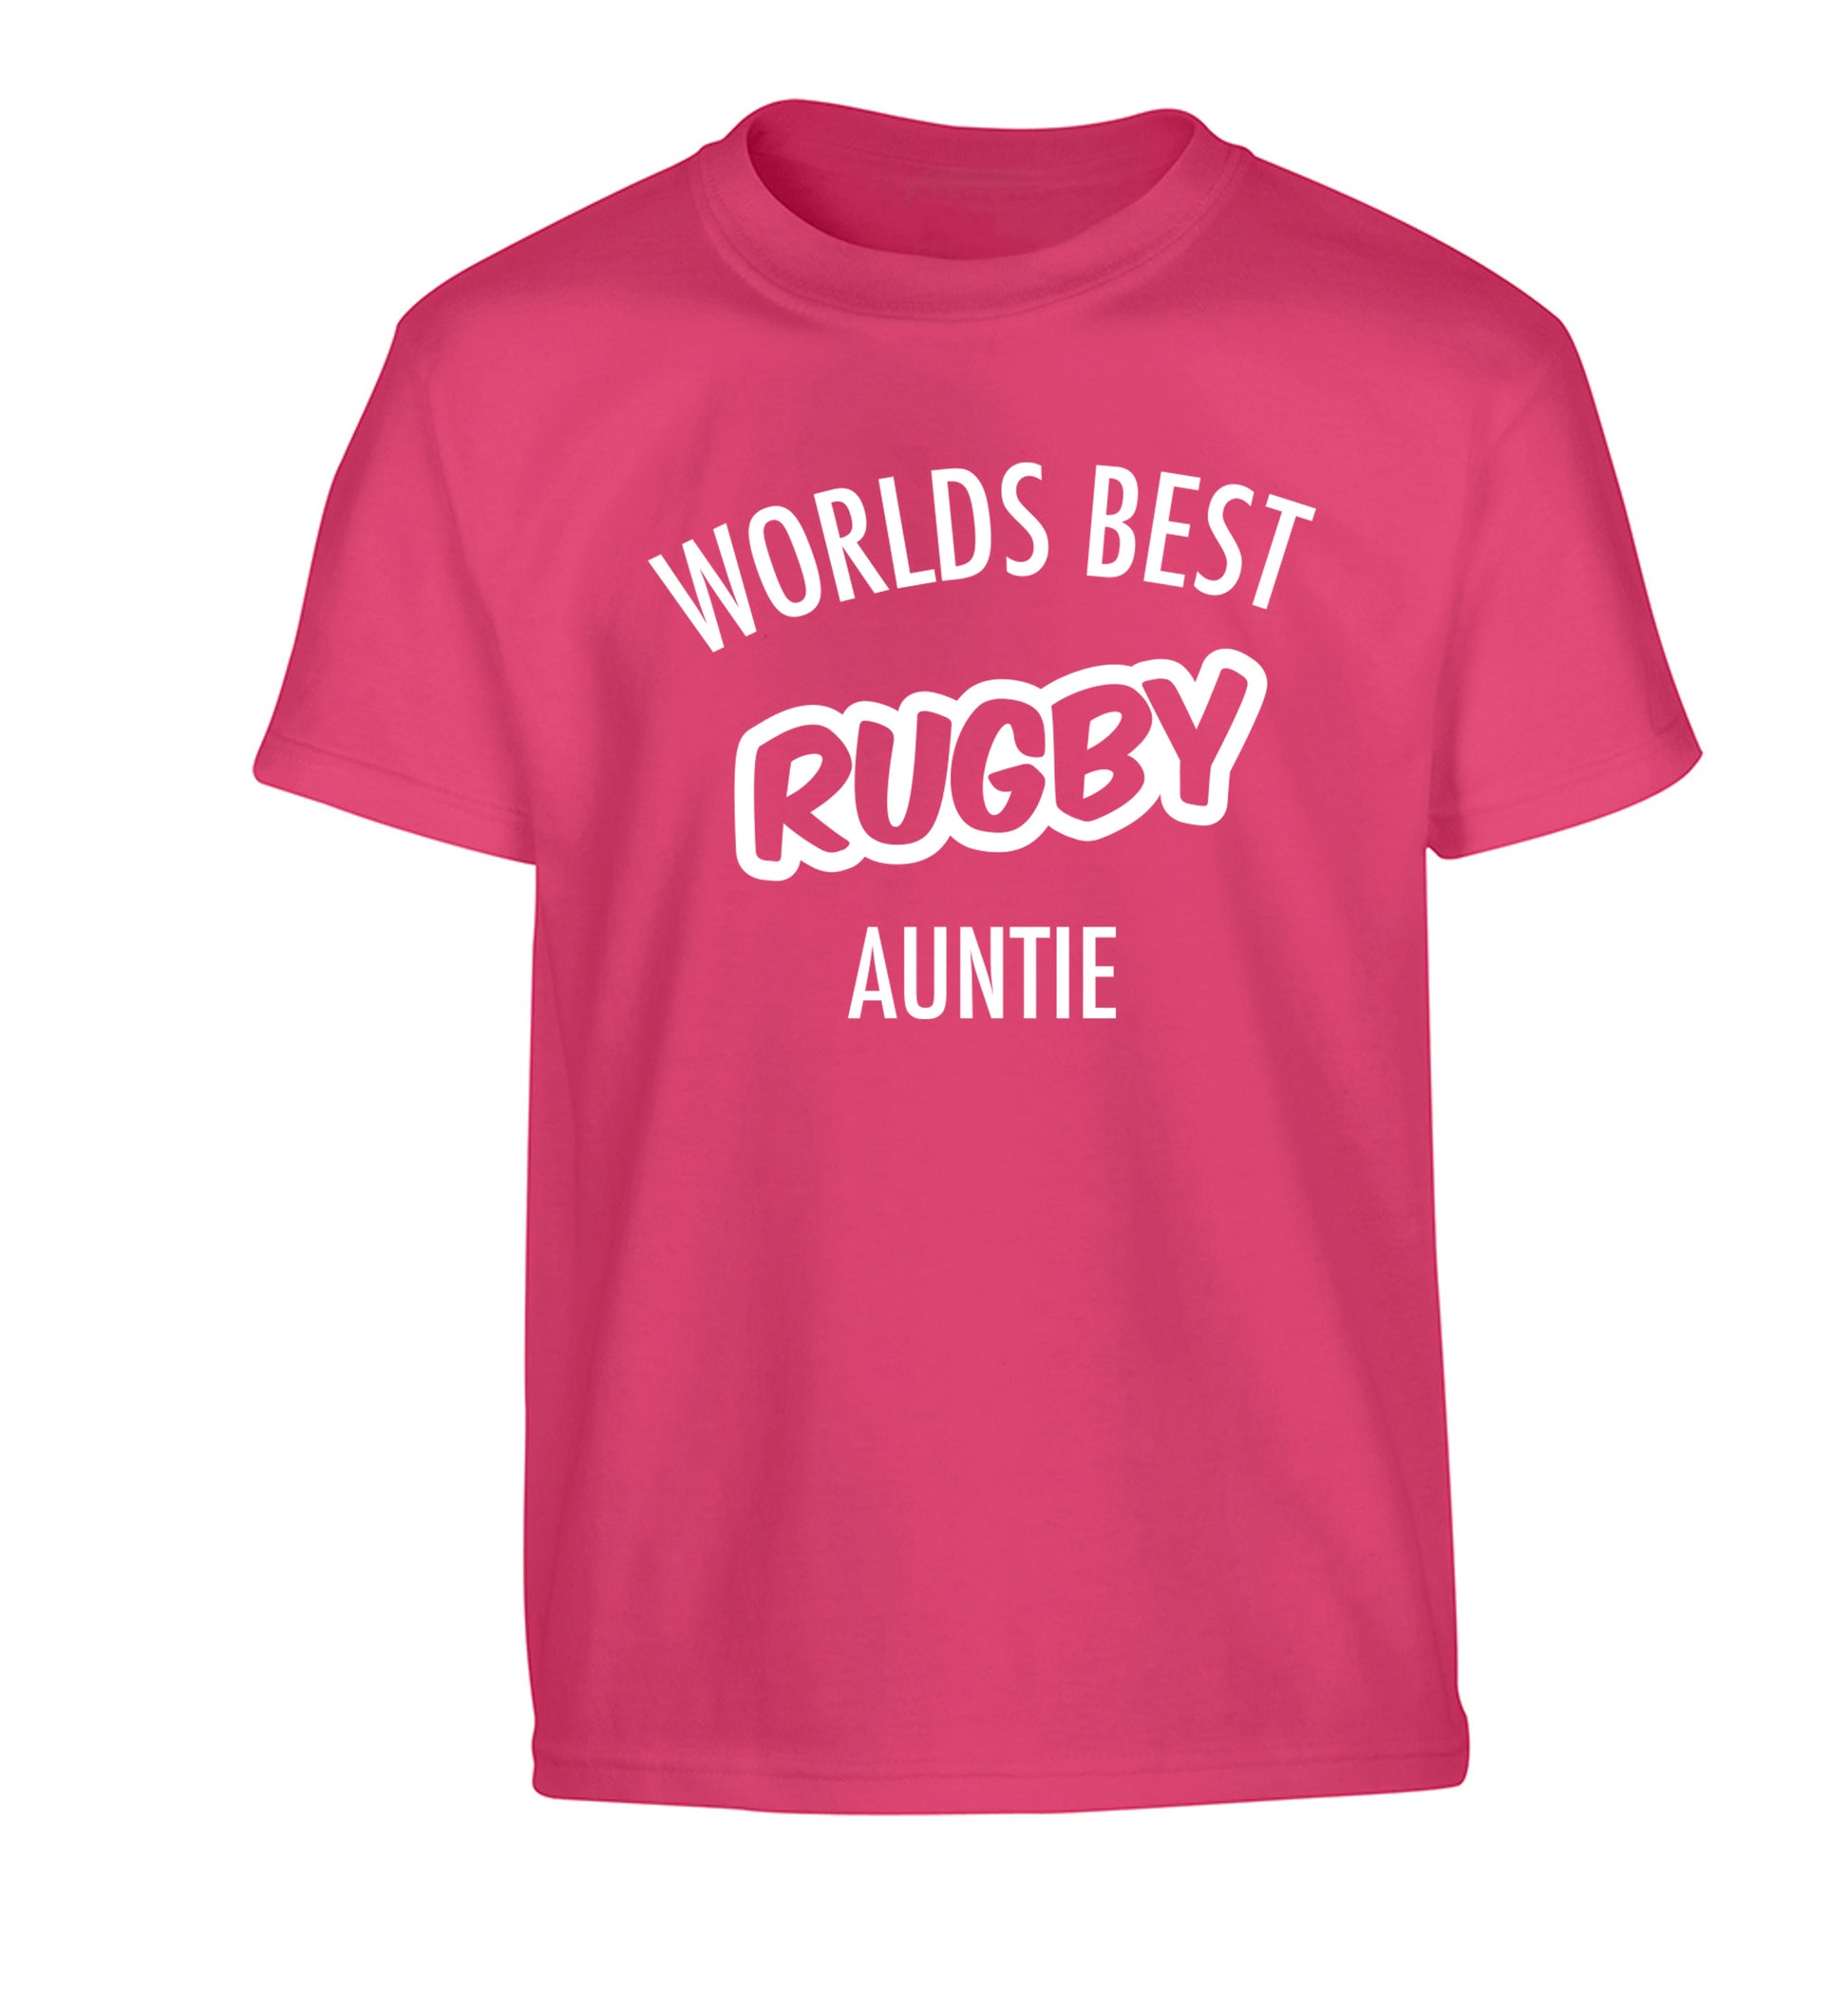 Worlds best rugby auntie Children's pink Tshirt 12-13 Years